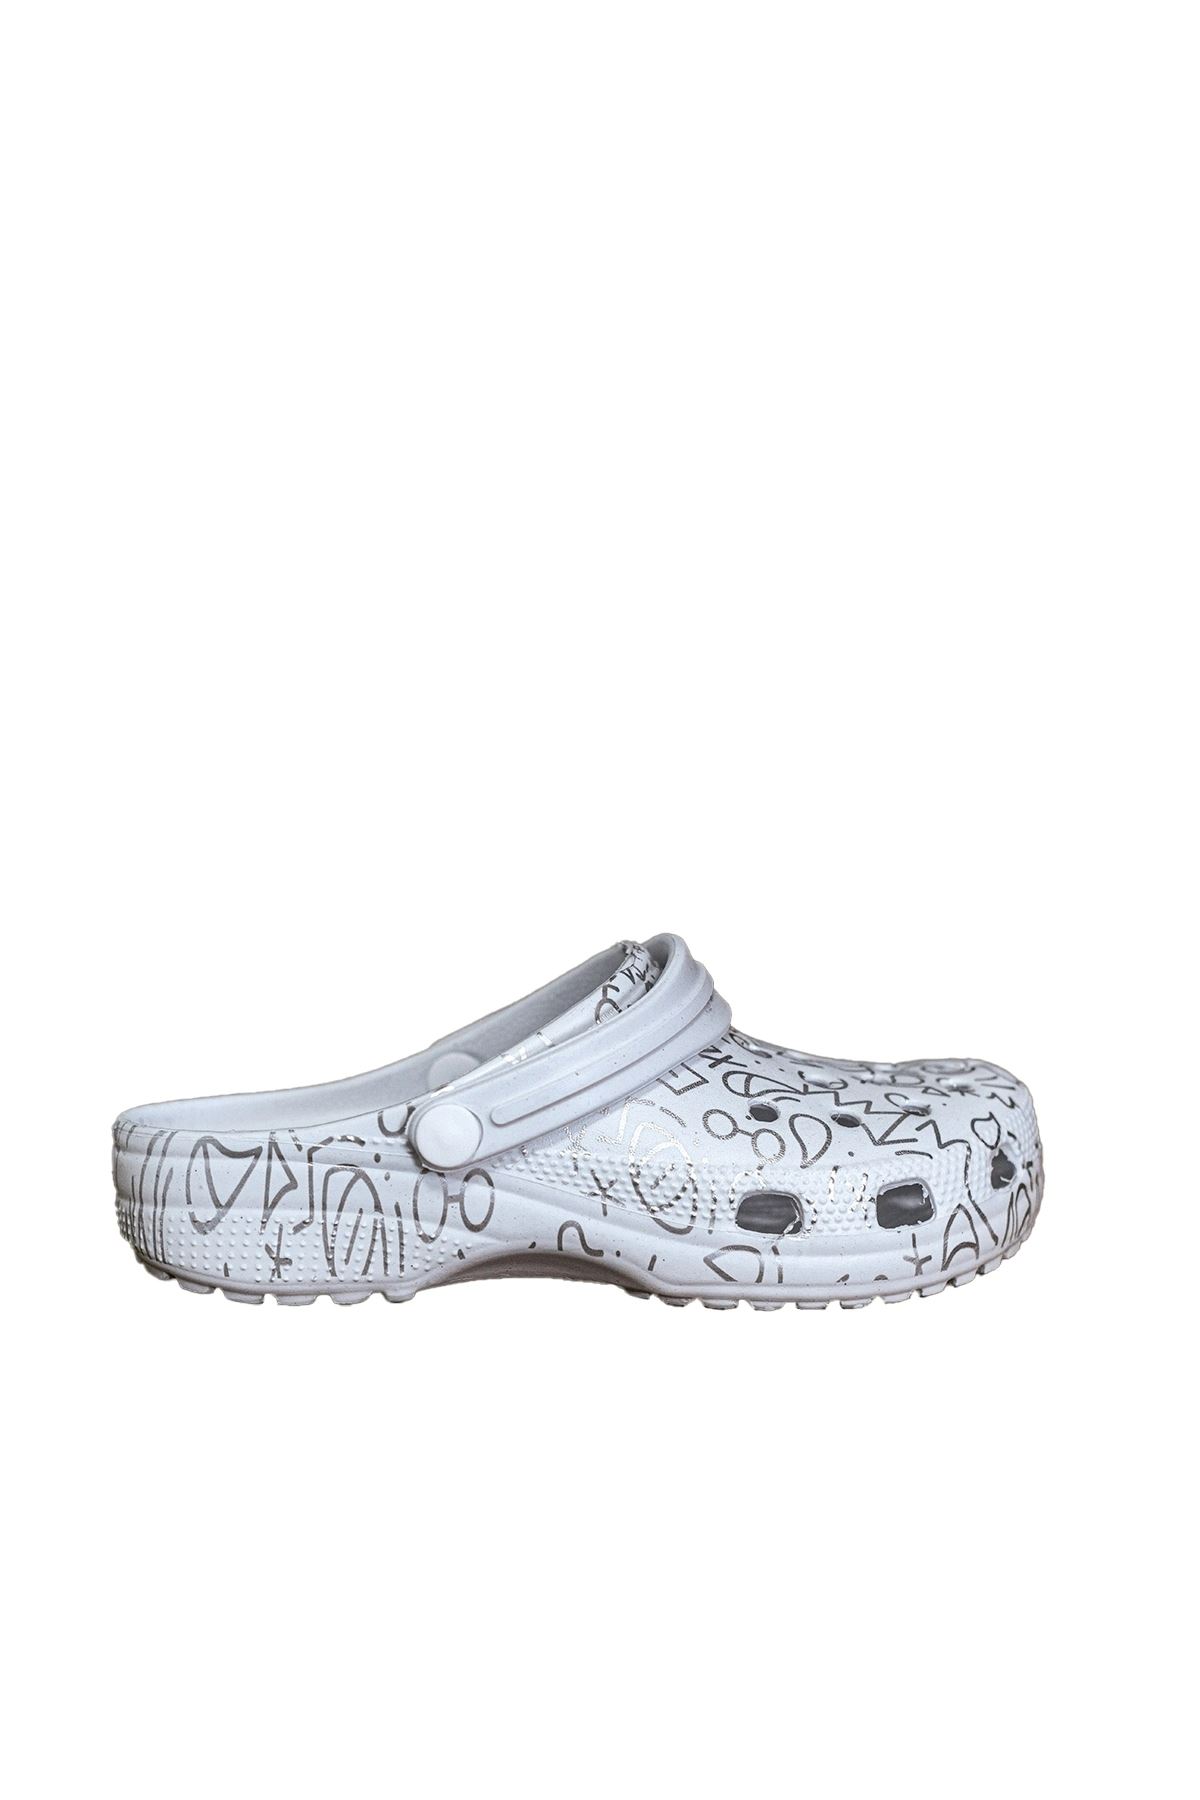 Beyaz Gümüş Baskılı Ortopedik Unisex Sandalet/Terlik